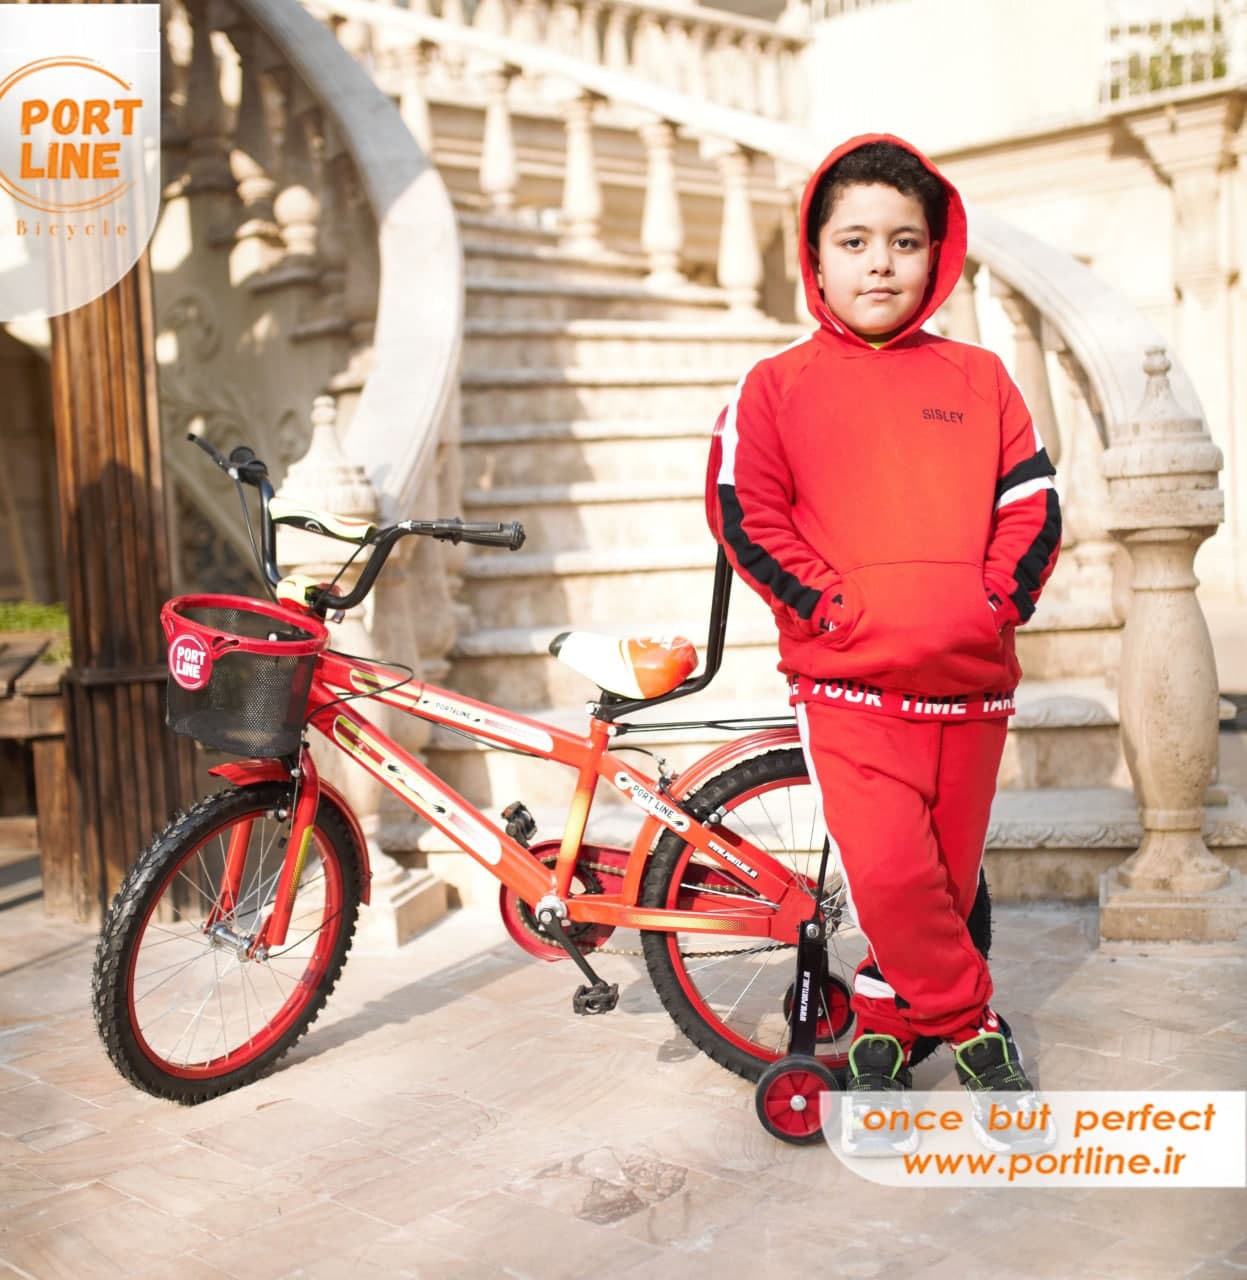 دوچرخه بچگانه برند پورت لاین مدل چیچک سایز 20 رنگ قرمز Kids Bicycle Port Line Chichak Size 20 Red